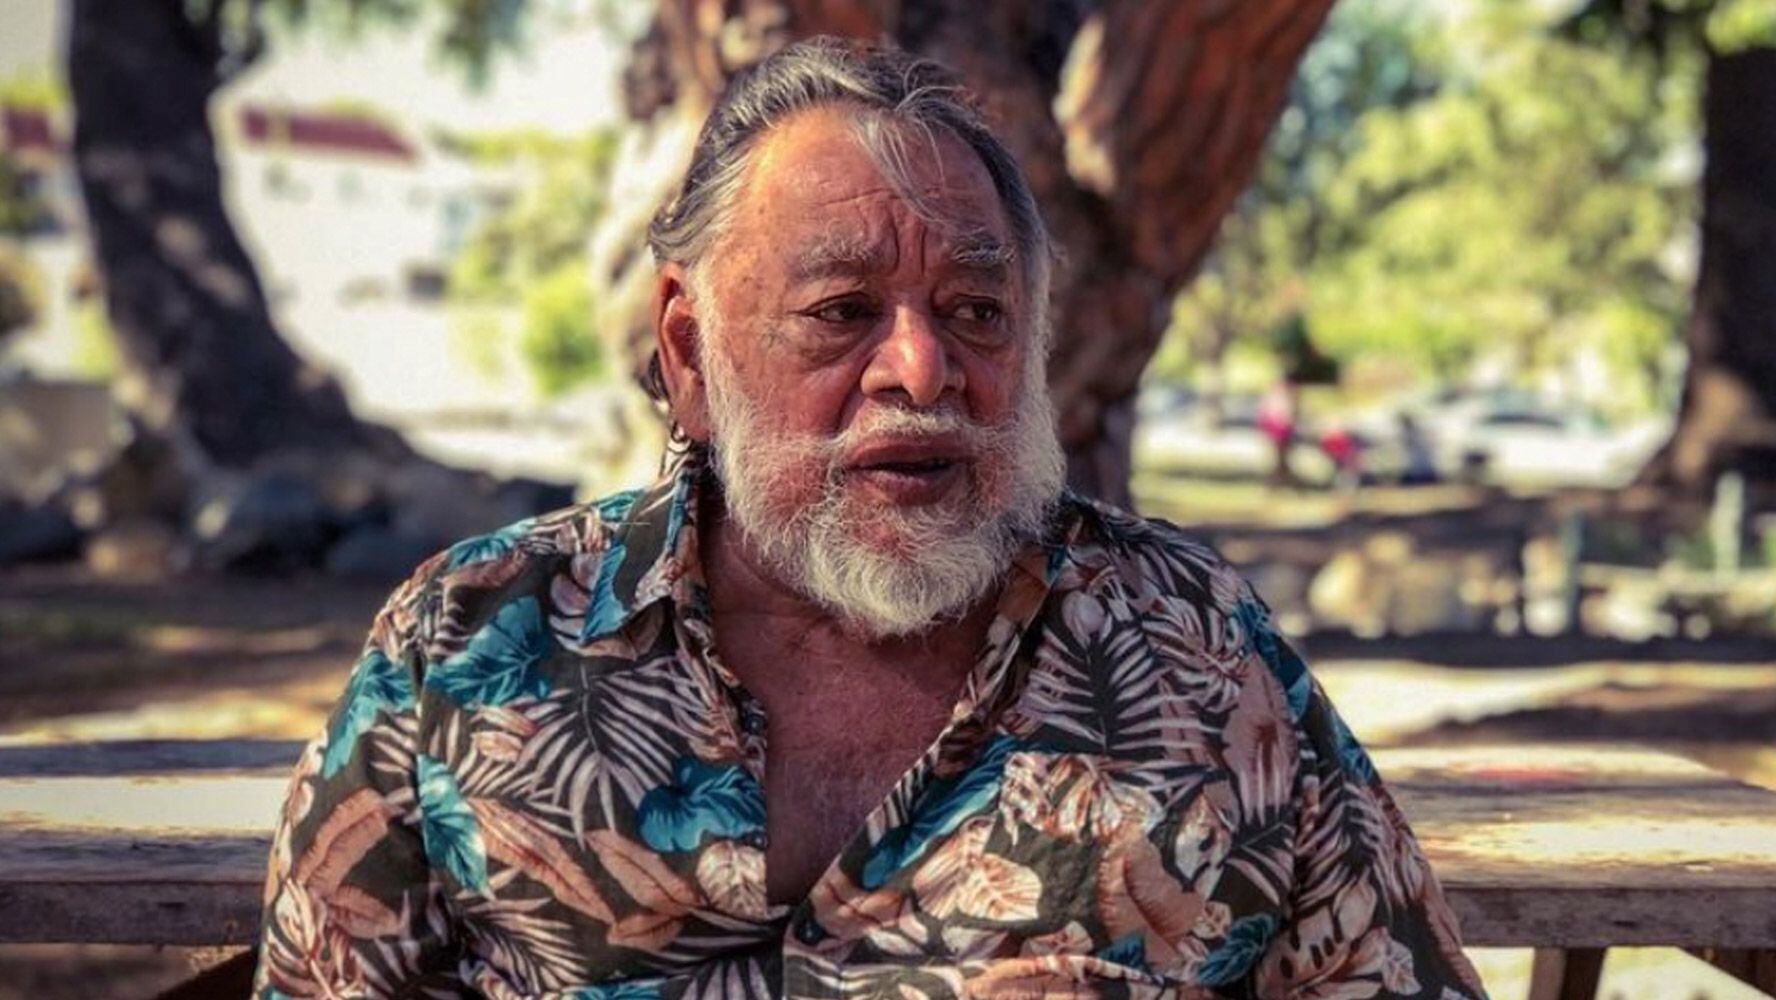 Muere Sergio Calderón, actor mexicano de ‘Piratas del Caribe’ y ‘Men in black’, a los 77 años